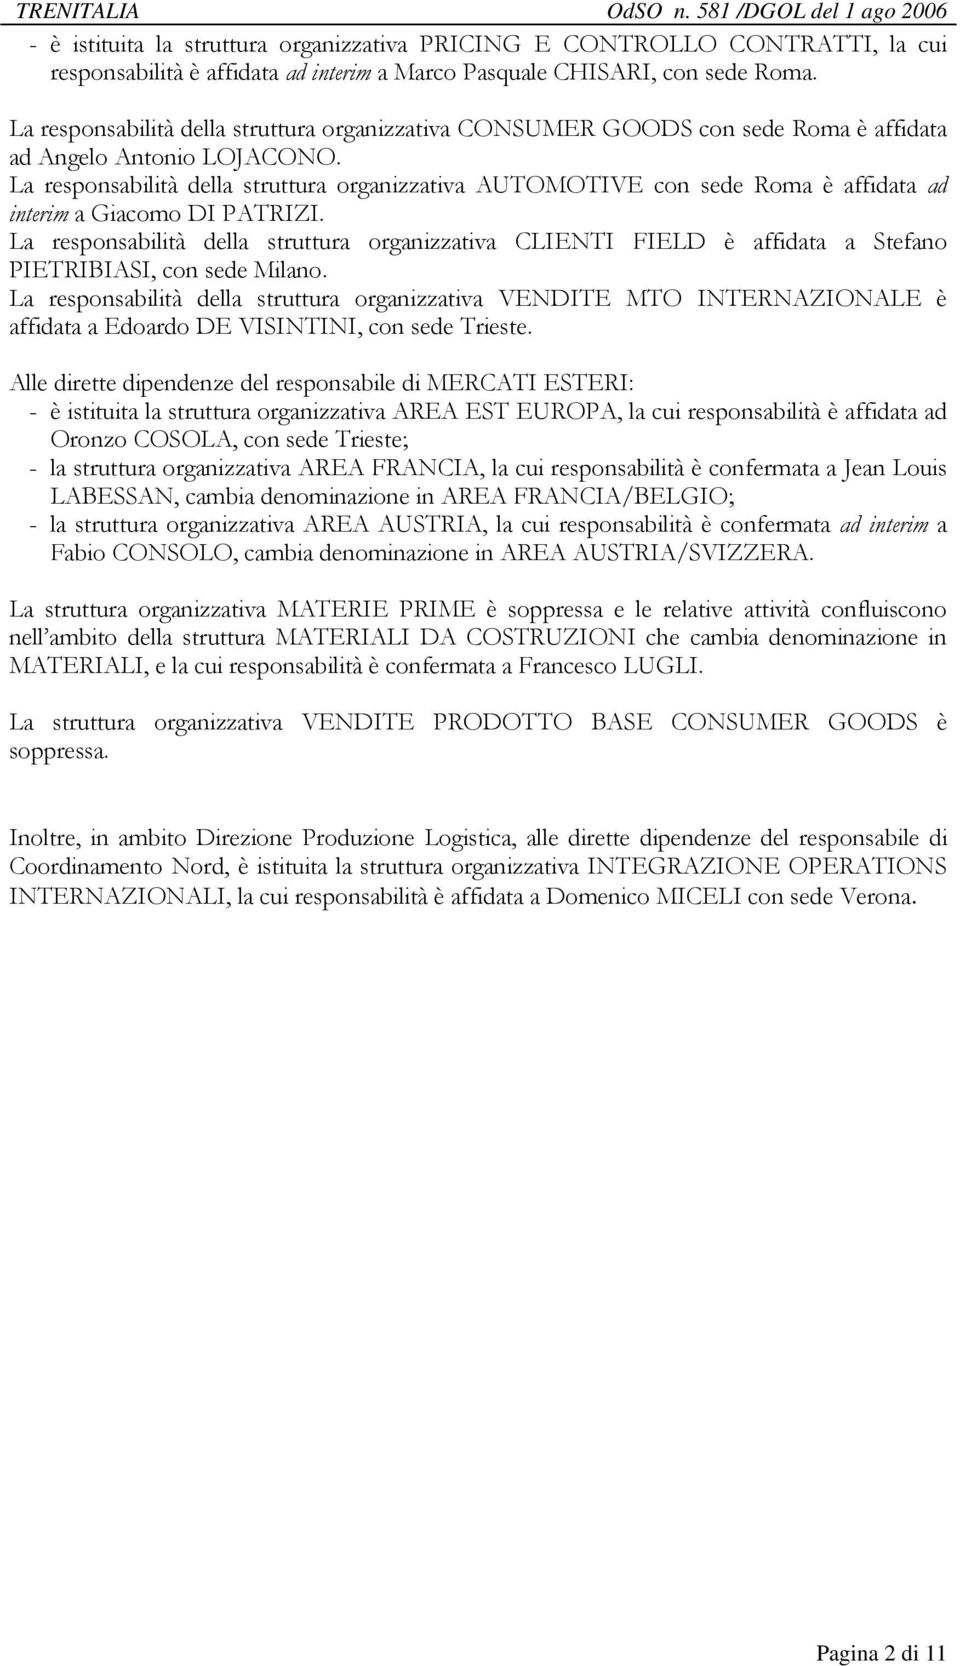 La responsabilità della struttura organizzativa AUTOMOTIVE con sede Roma è affidata ad interim a Giacomo DI PATRIZI.